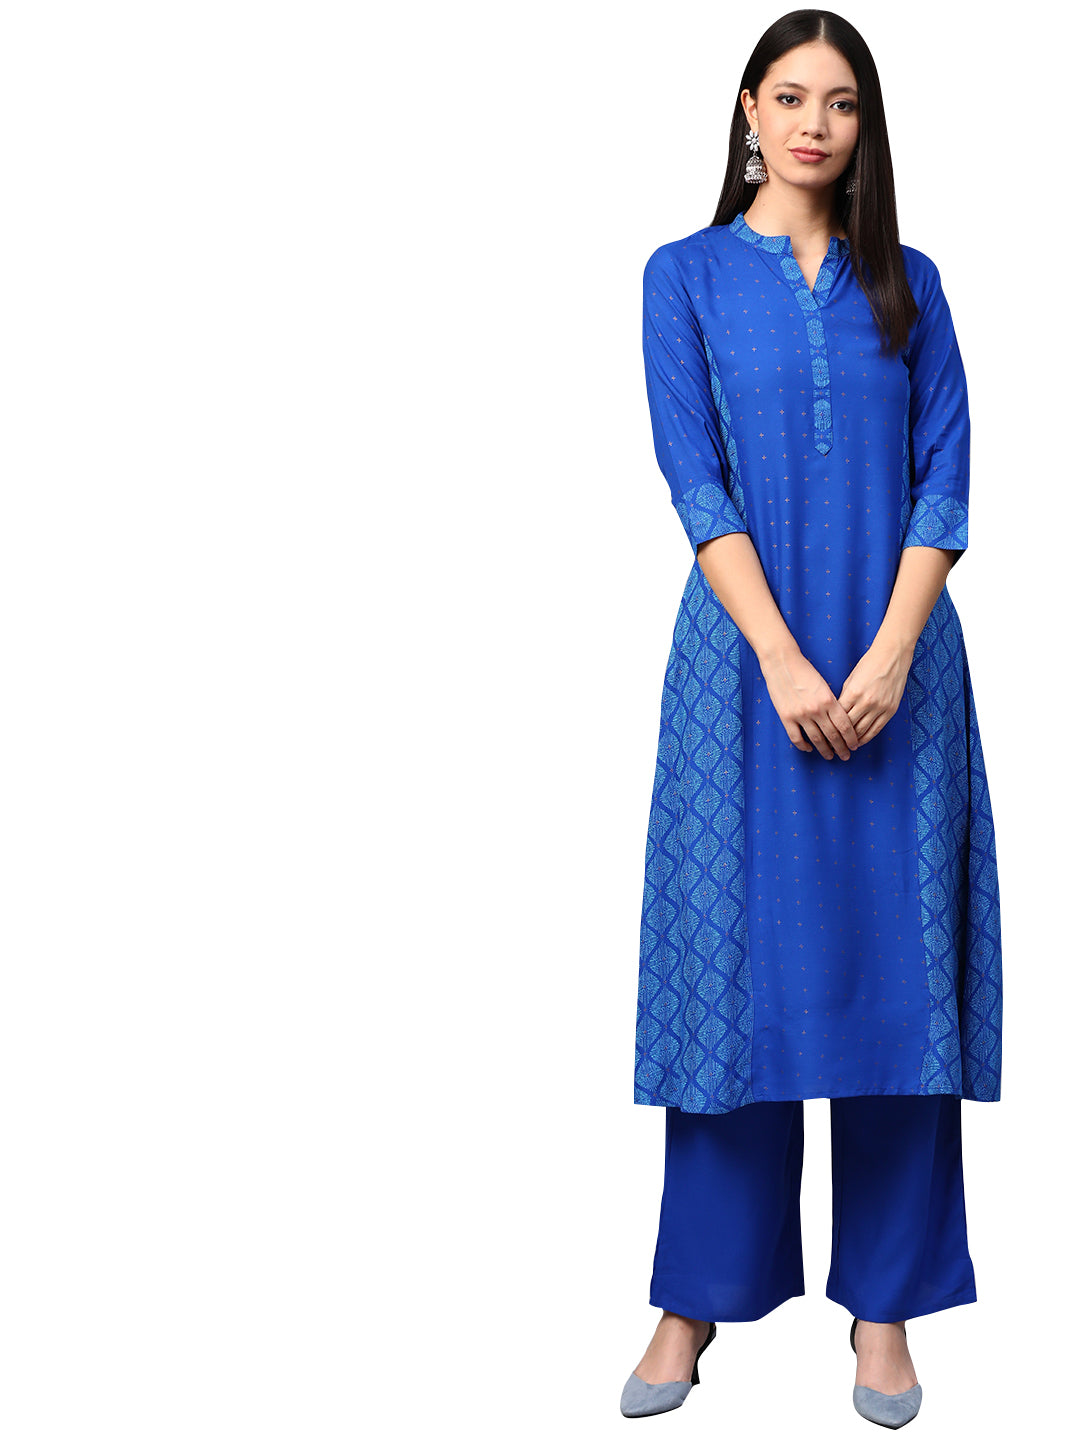 Women's Royal Blue Rayon Kurta - Ziyaa